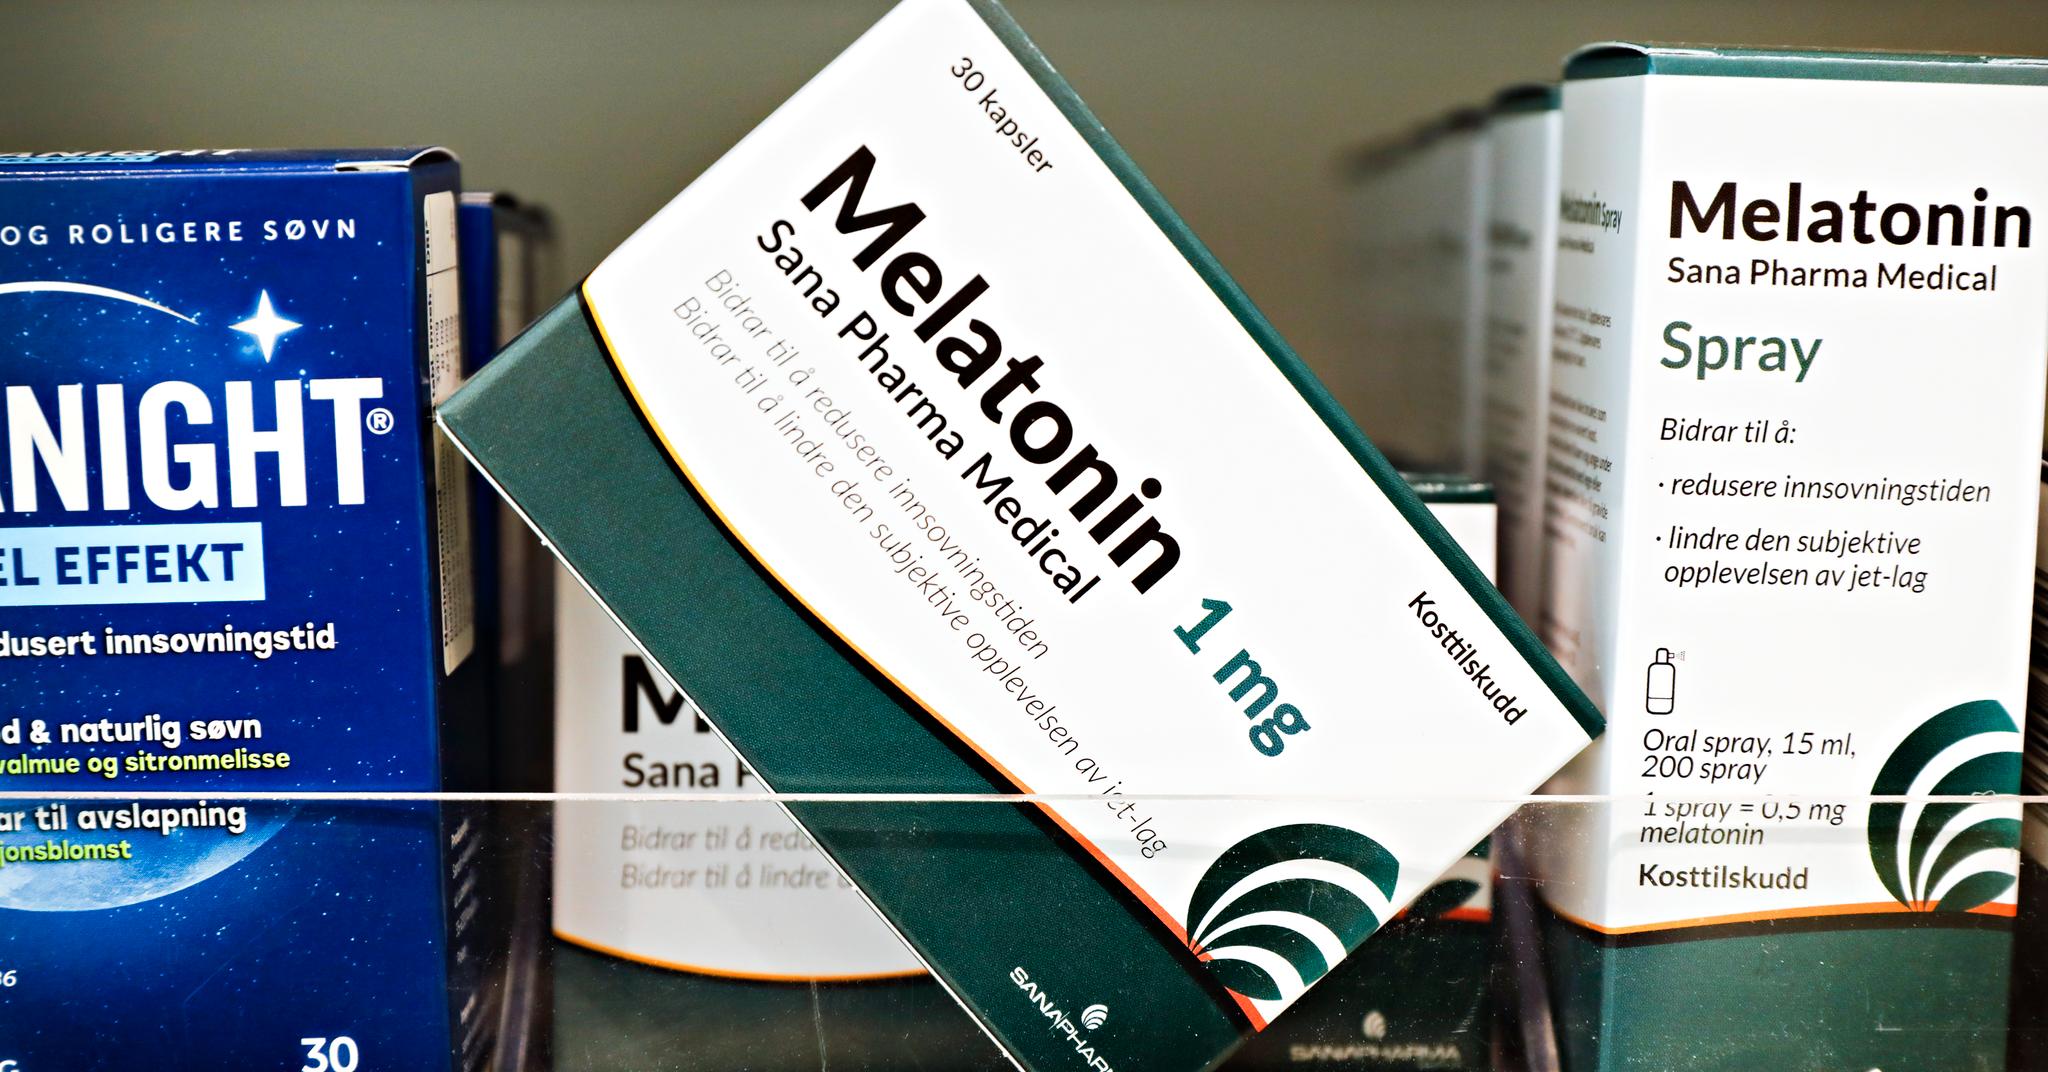 Melatonin opp til 1 mg selges som kosttilskudd i blant annet apoteker, matbutikker og helsekostbutikker. Disse er ikke beregnet for barn under 18 år. 